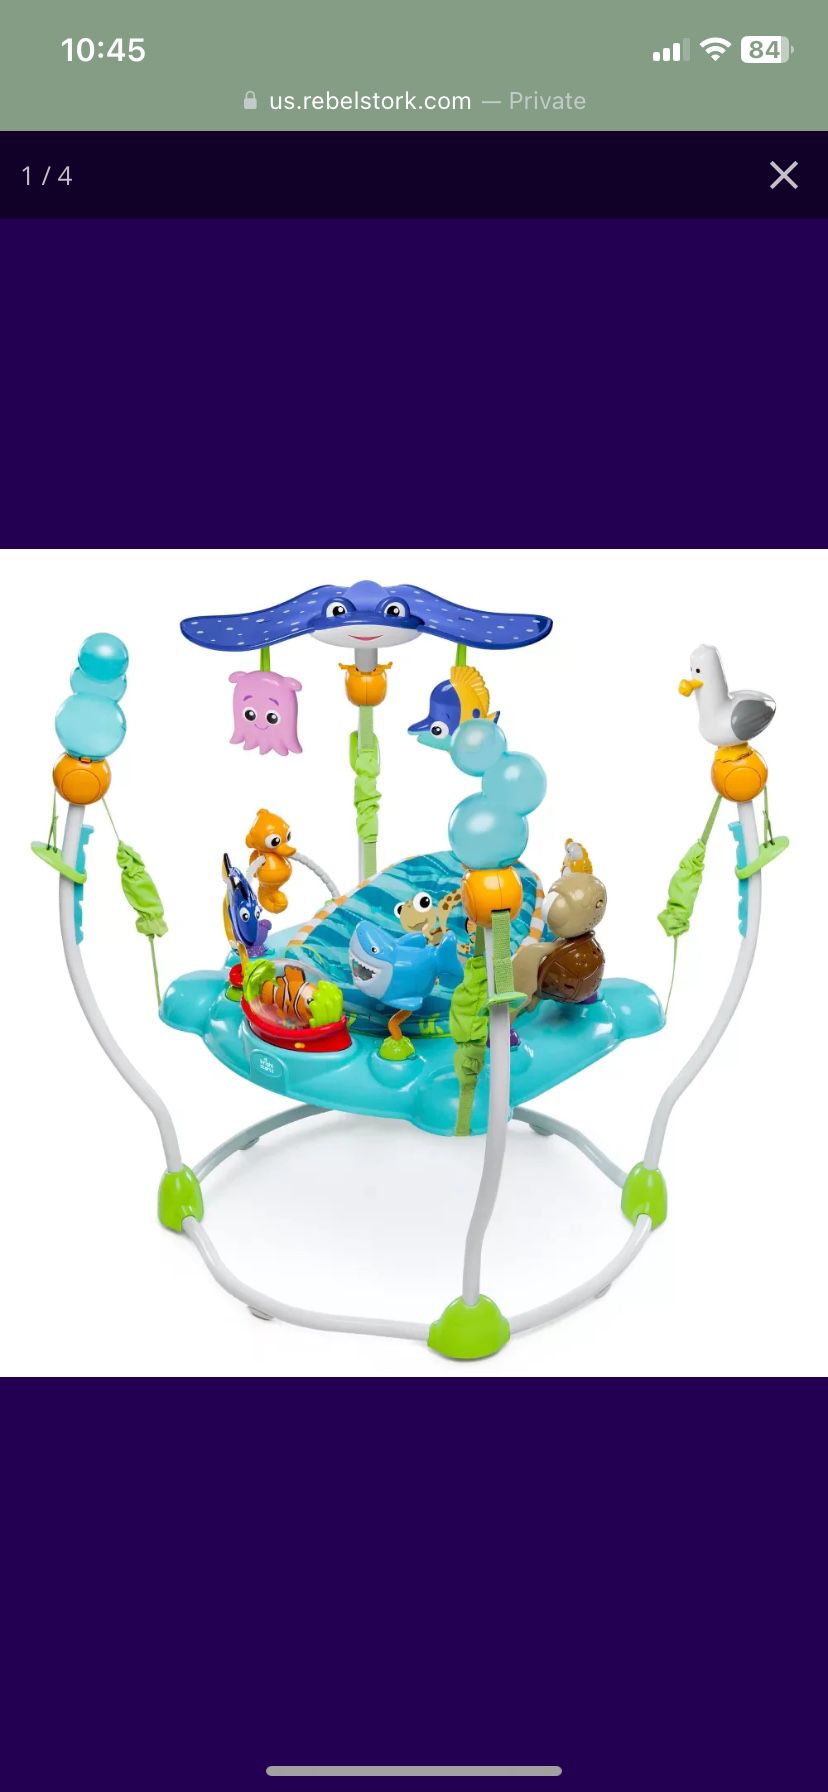 Disney Baby Finding Nemo Sea of Activities Jumper